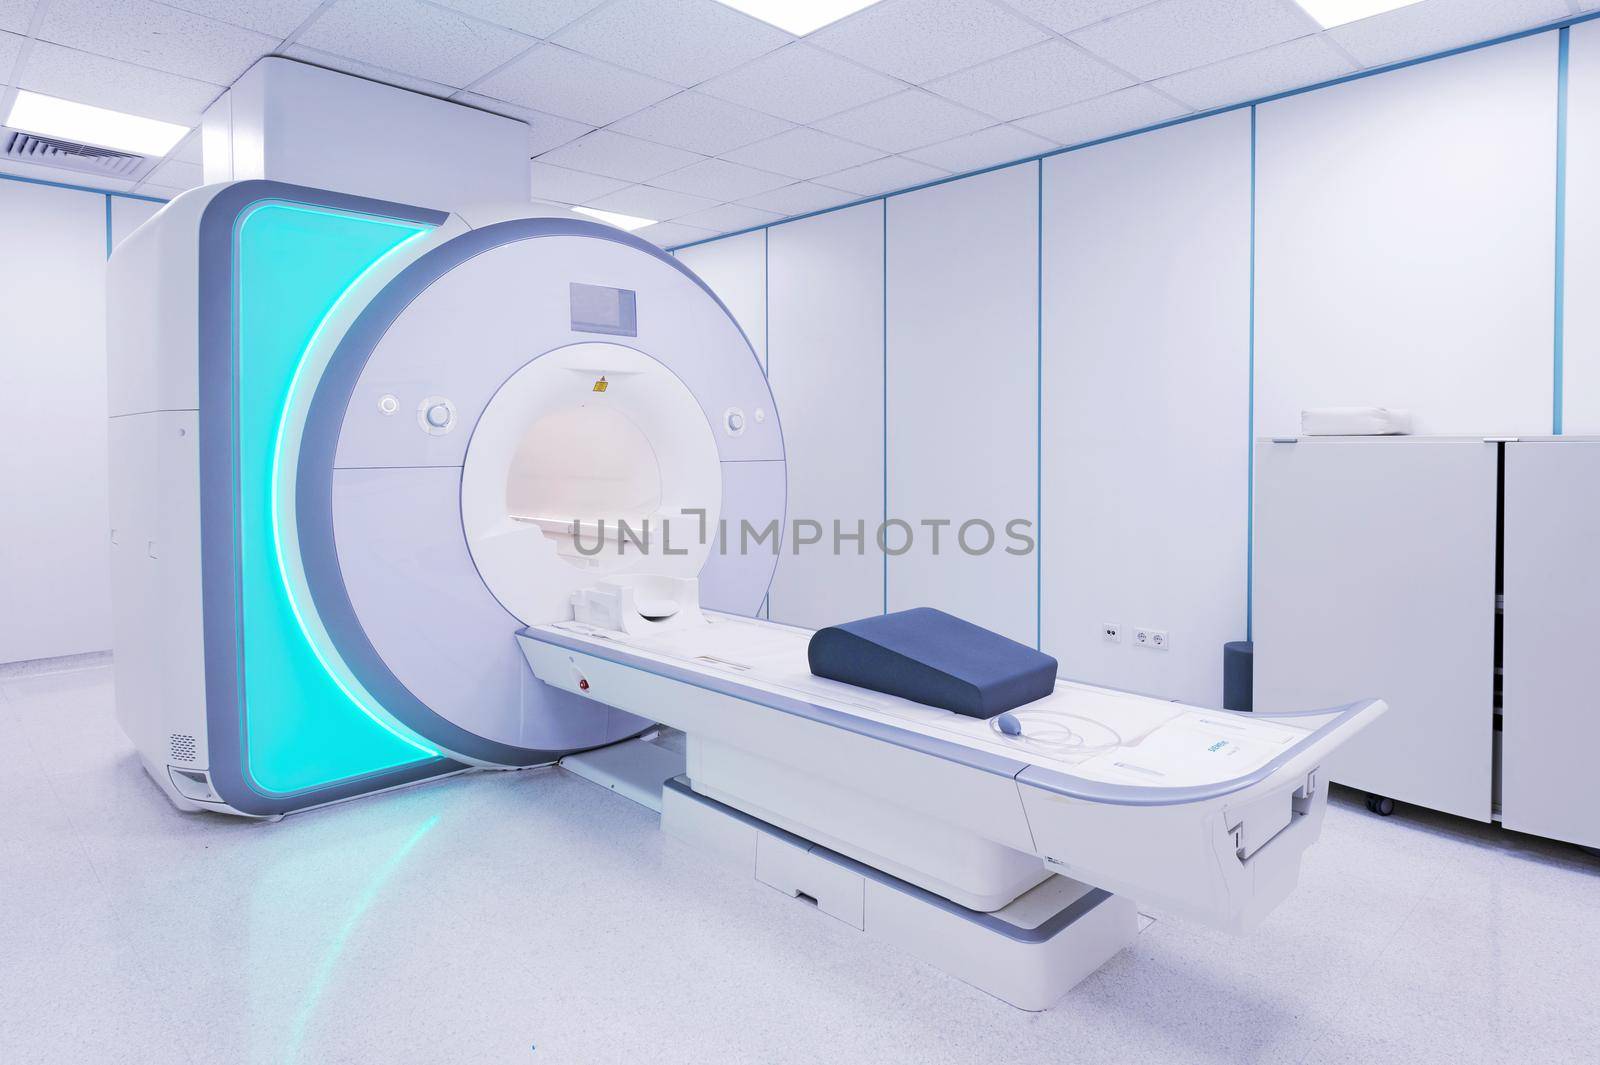 MRI - Magnetic resonance imaging scan device by kaliantye